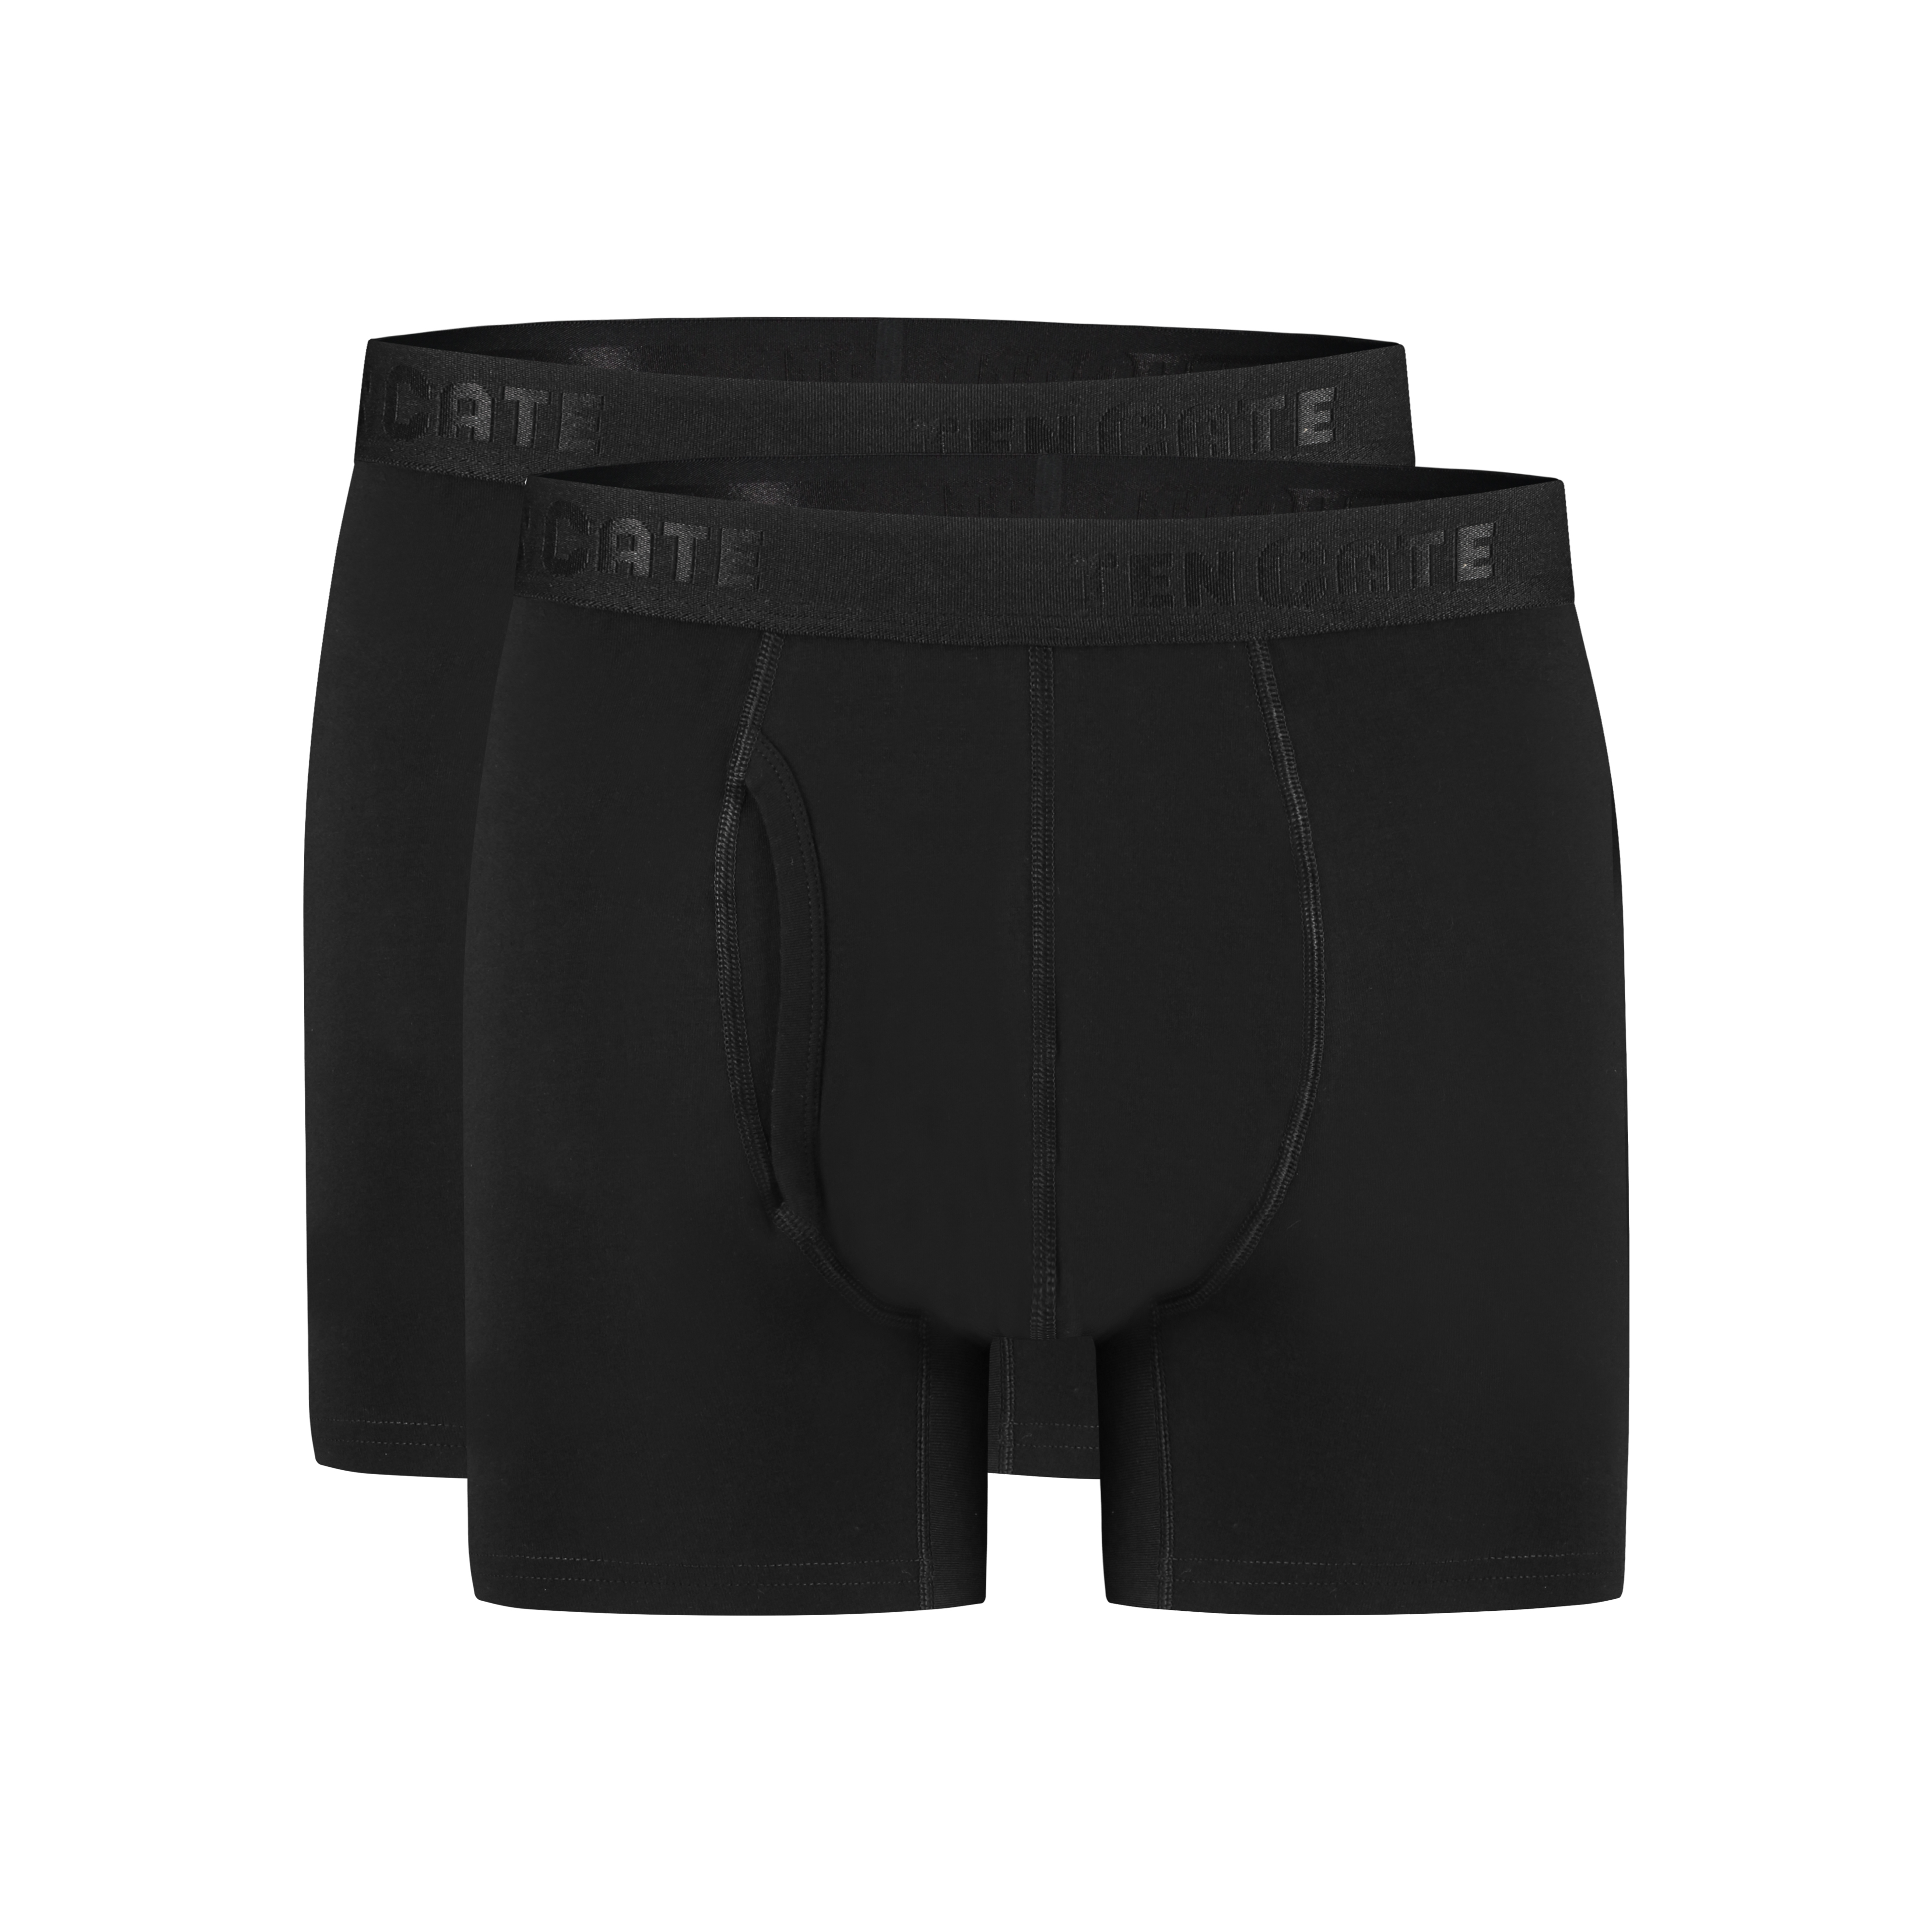 shorts met gulp zwart 2 pack